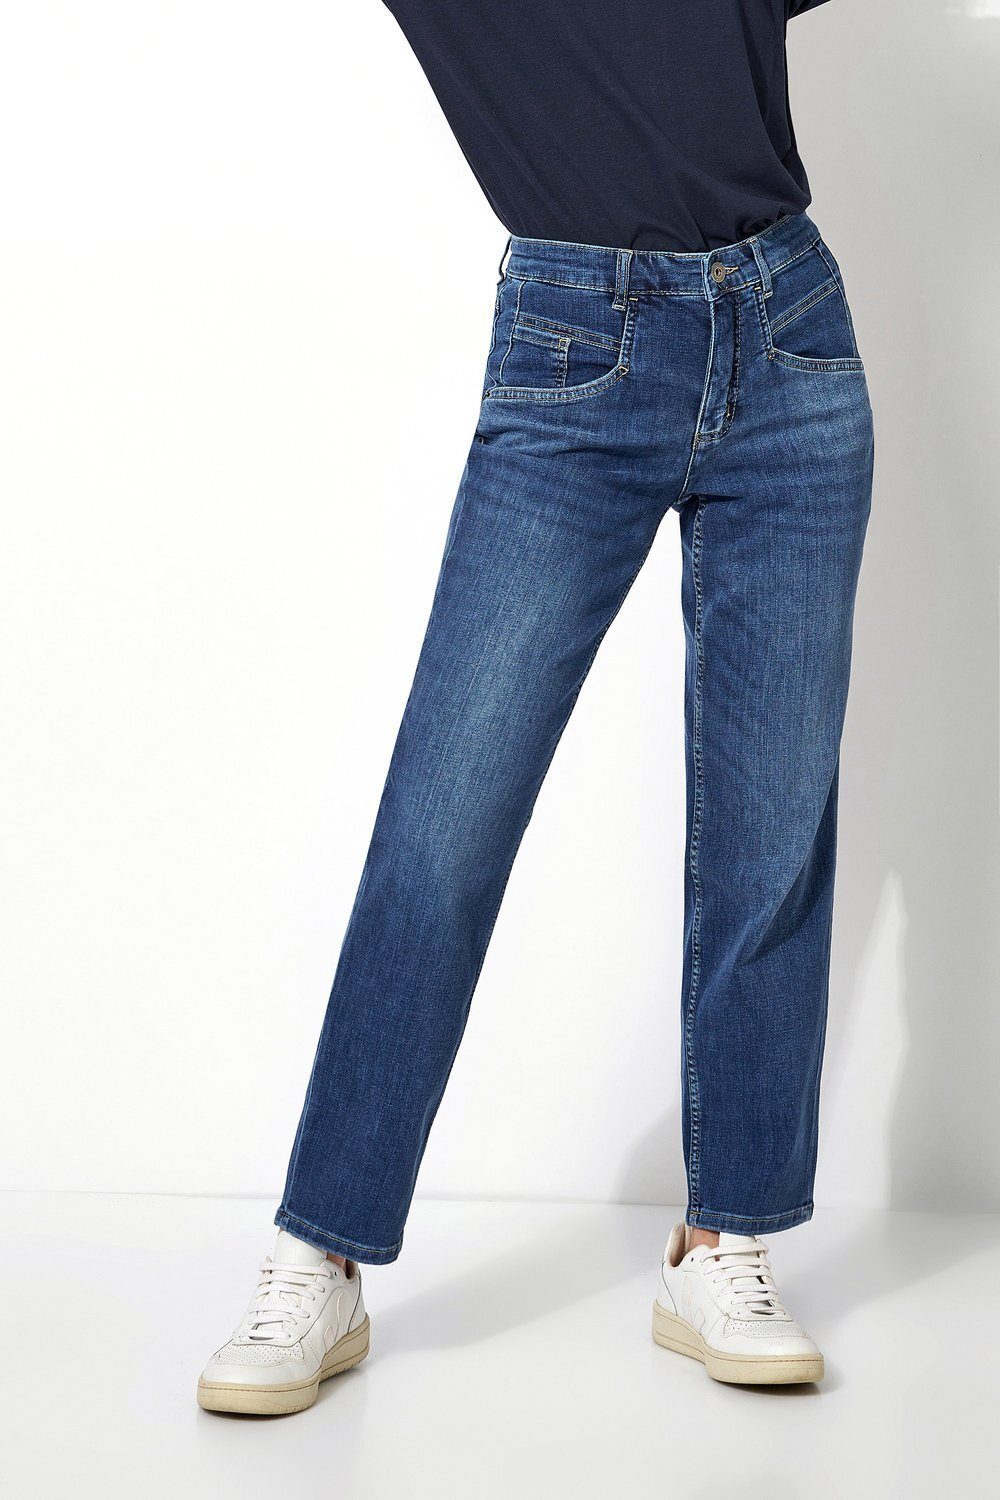 TONI Comfort-fit-Jeans Happy mit Oberschenkelweite mittelblau 554 - entspannter